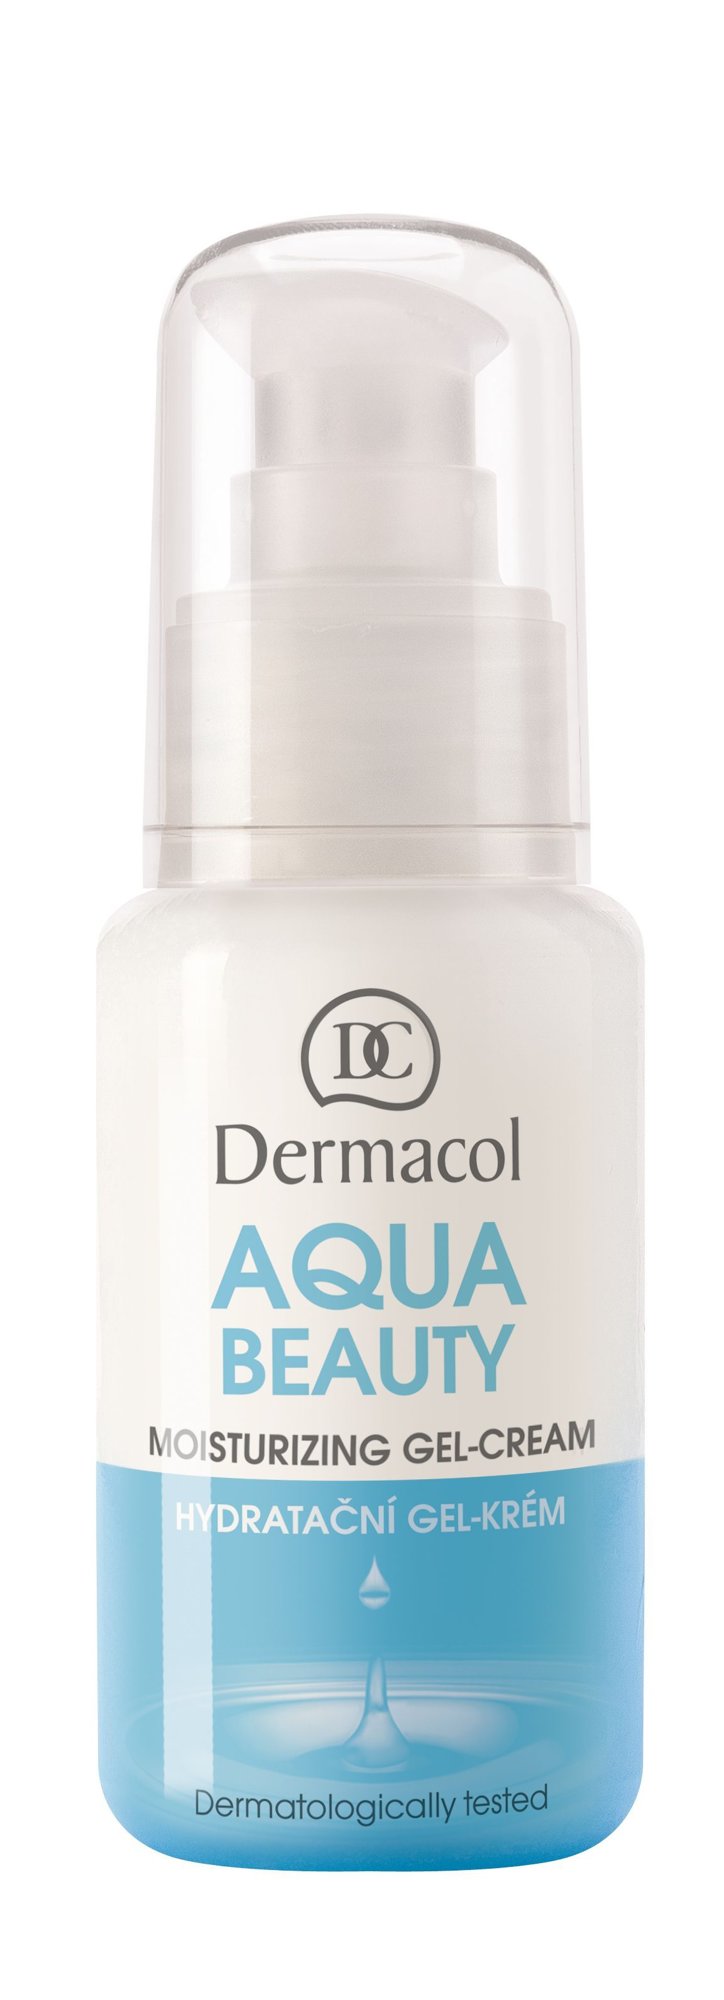 Dermacol Aqua Beauty veido gelis